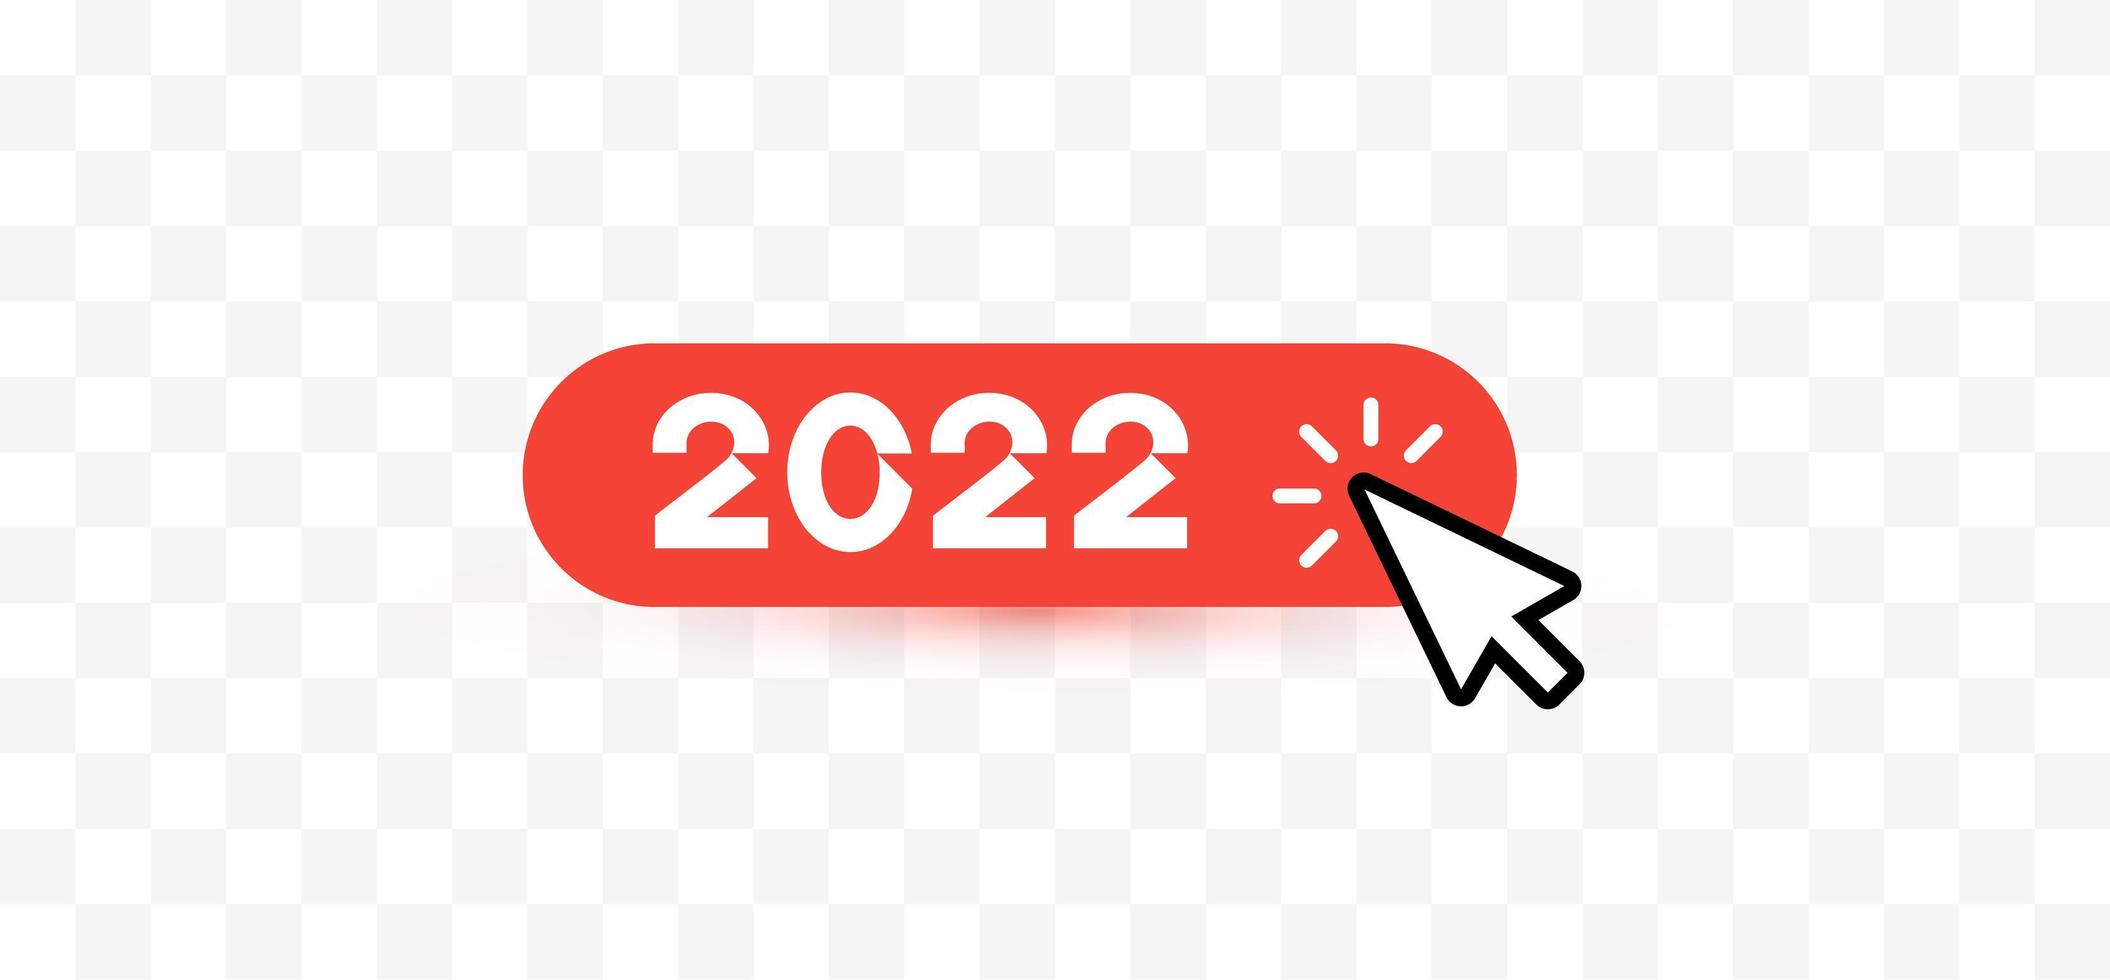 bonne année 2022 clic de souris sur le bouton pour les salutations et les invitations, calendrier 2022, interface web, graphique de félicitations de noël. illustration vectorielle vecteur